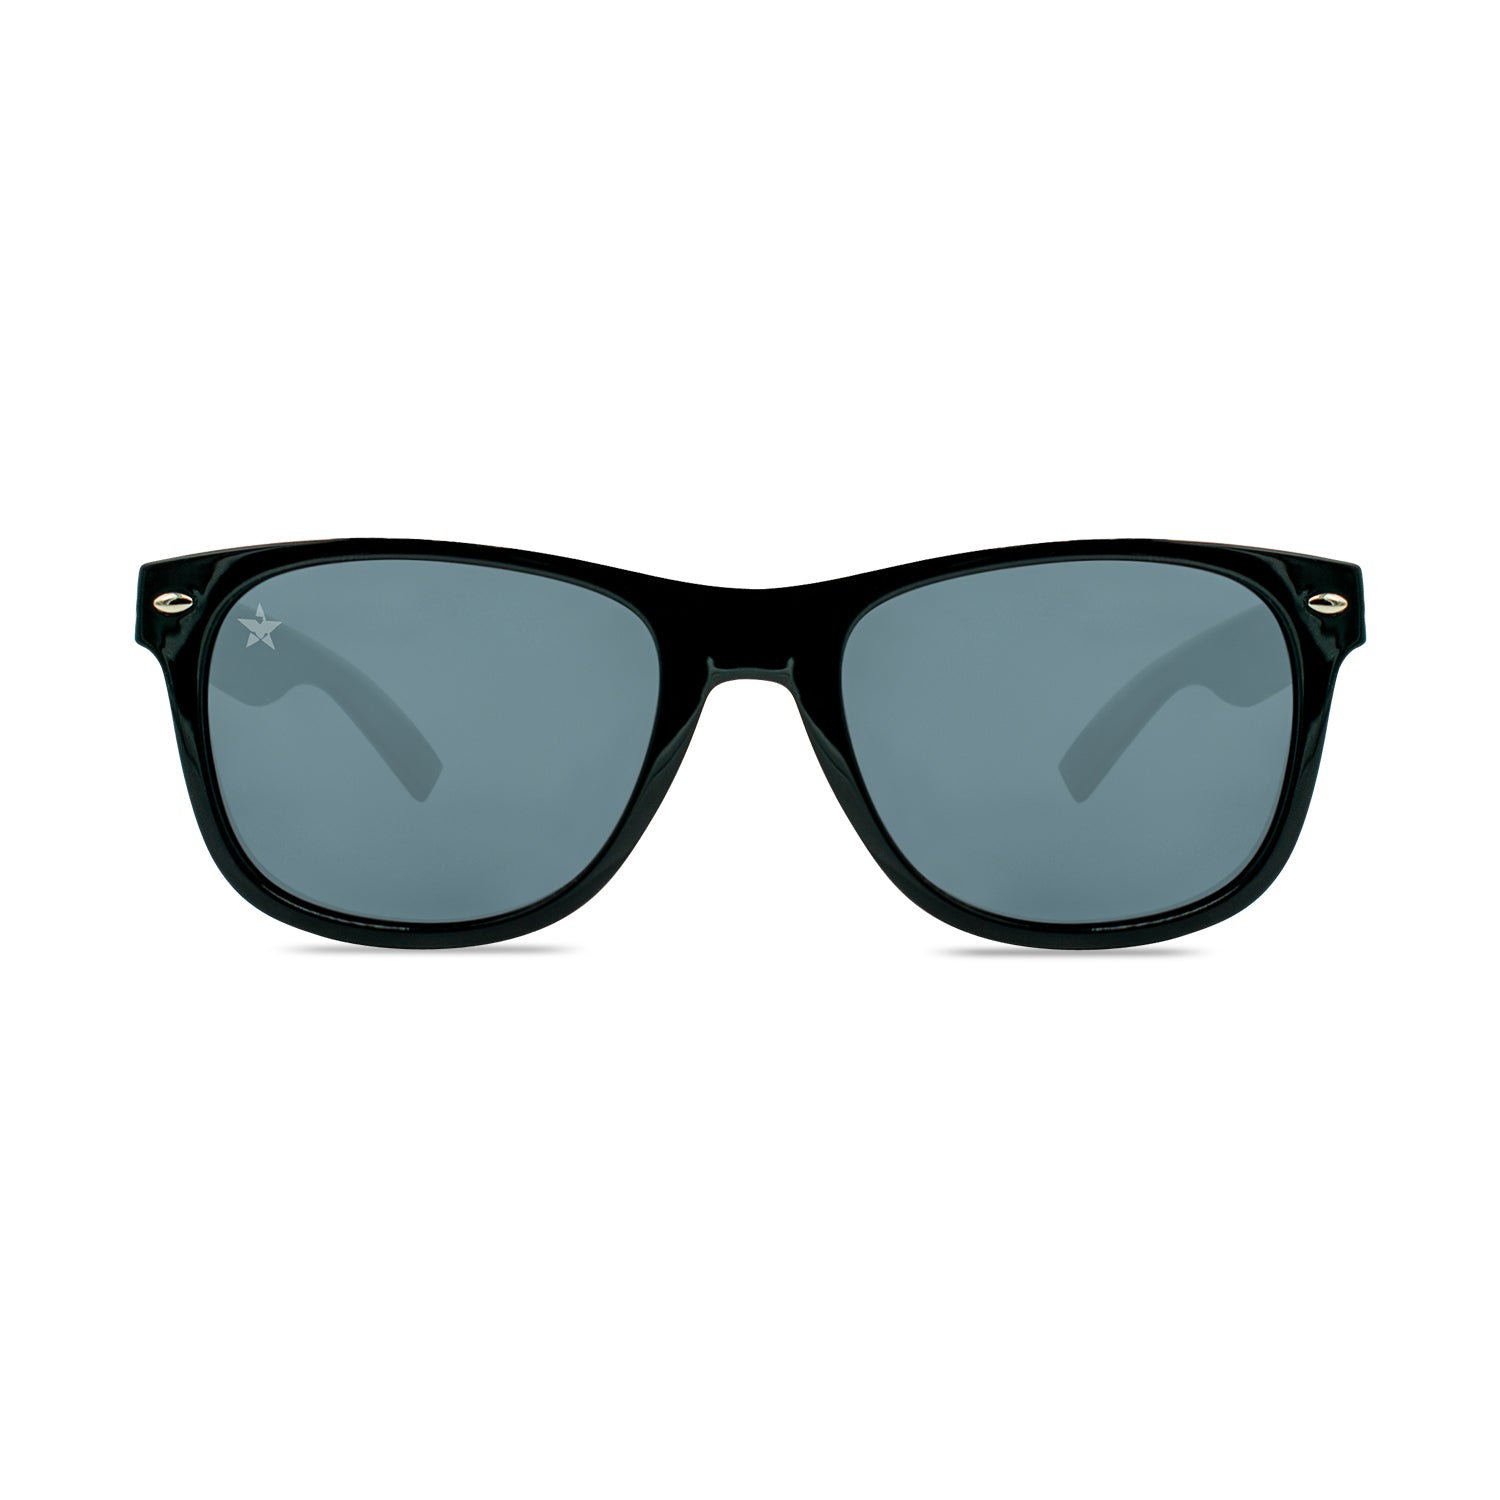 TINTS Eyewear - Affordable Polarized Sunglasses